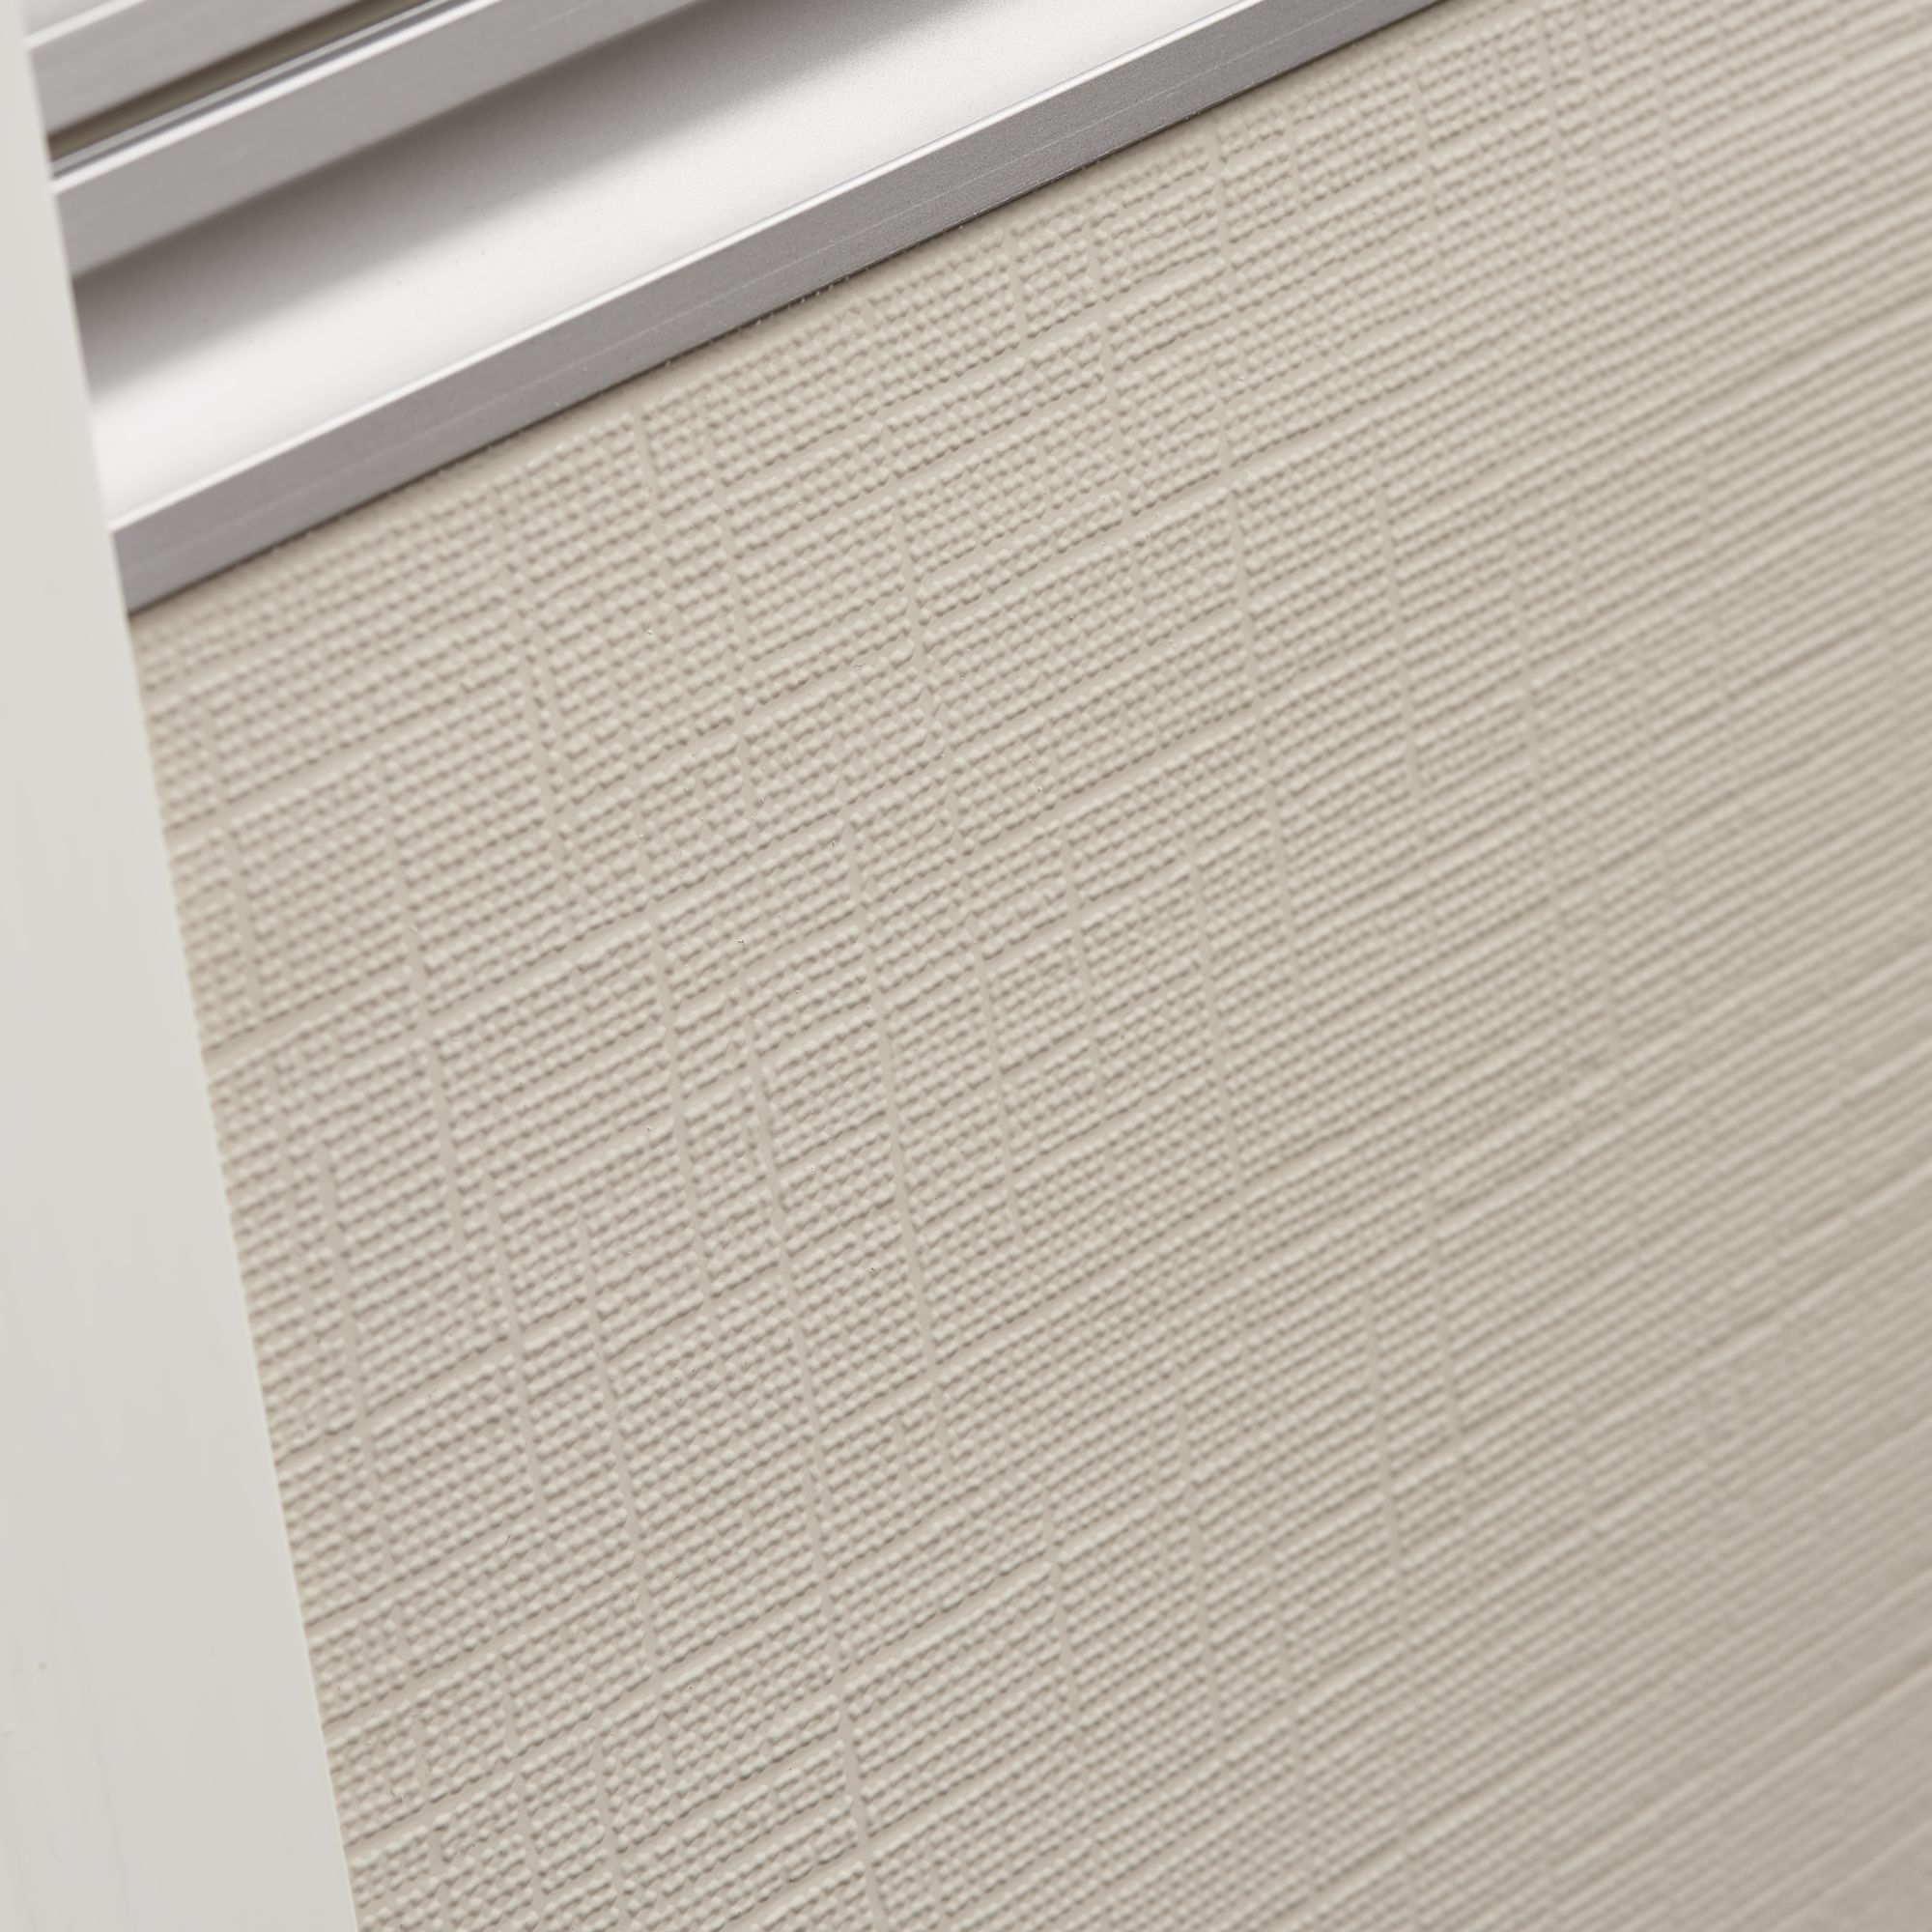 Dometic DB1R Fensterrollo, 1280 x 530 mm, creme-weiß RAL 9001